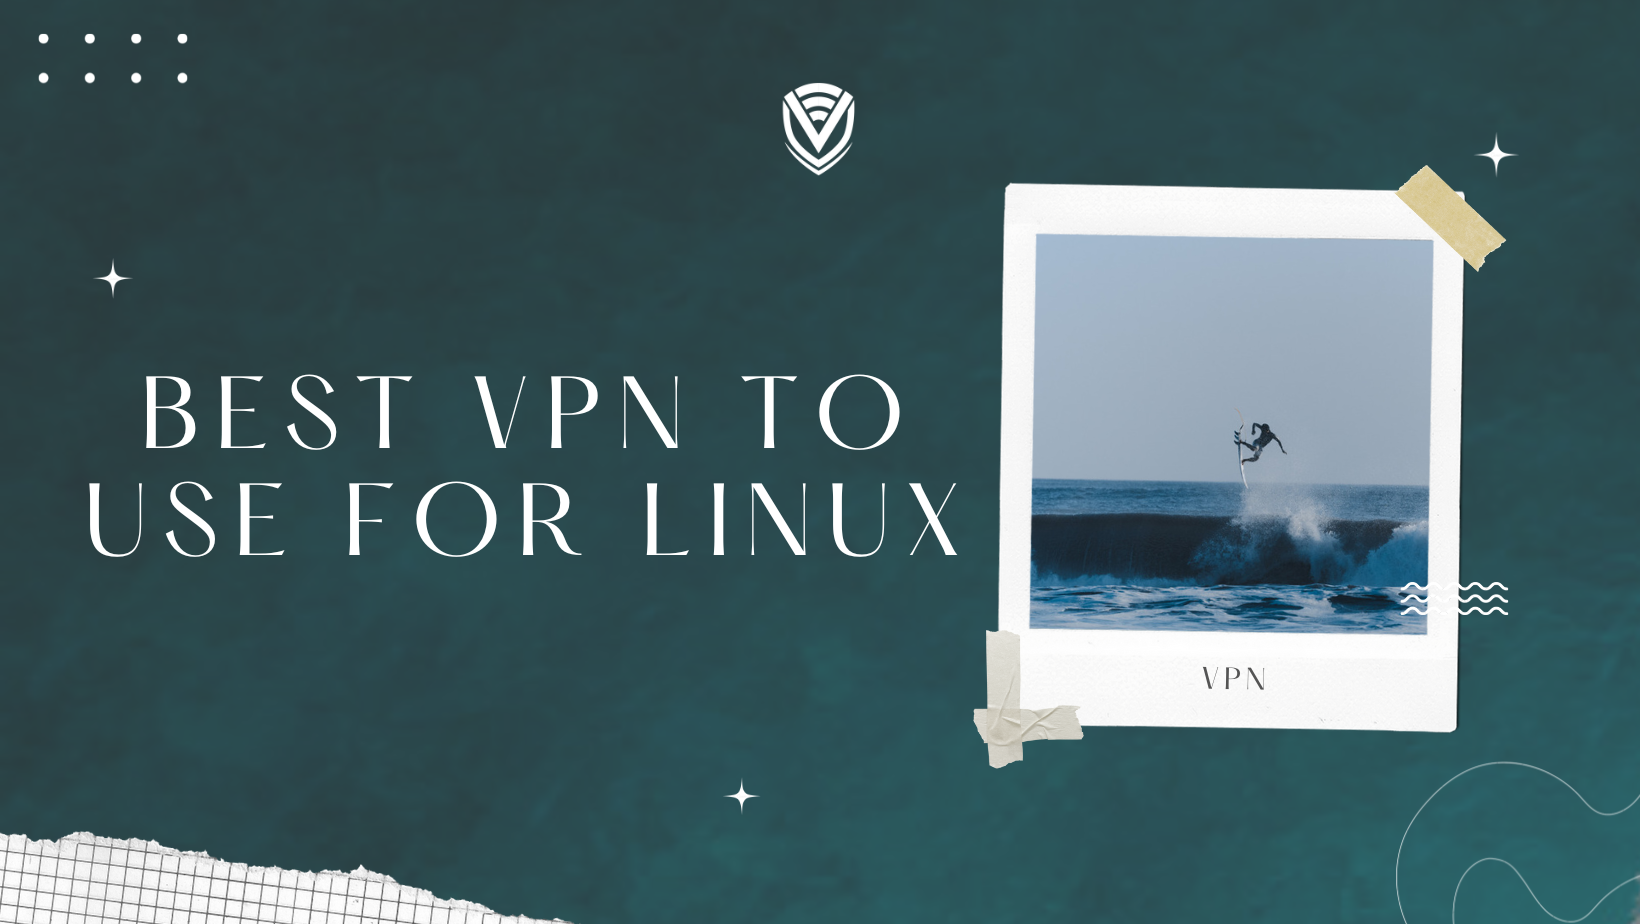 Best VPN for Linux